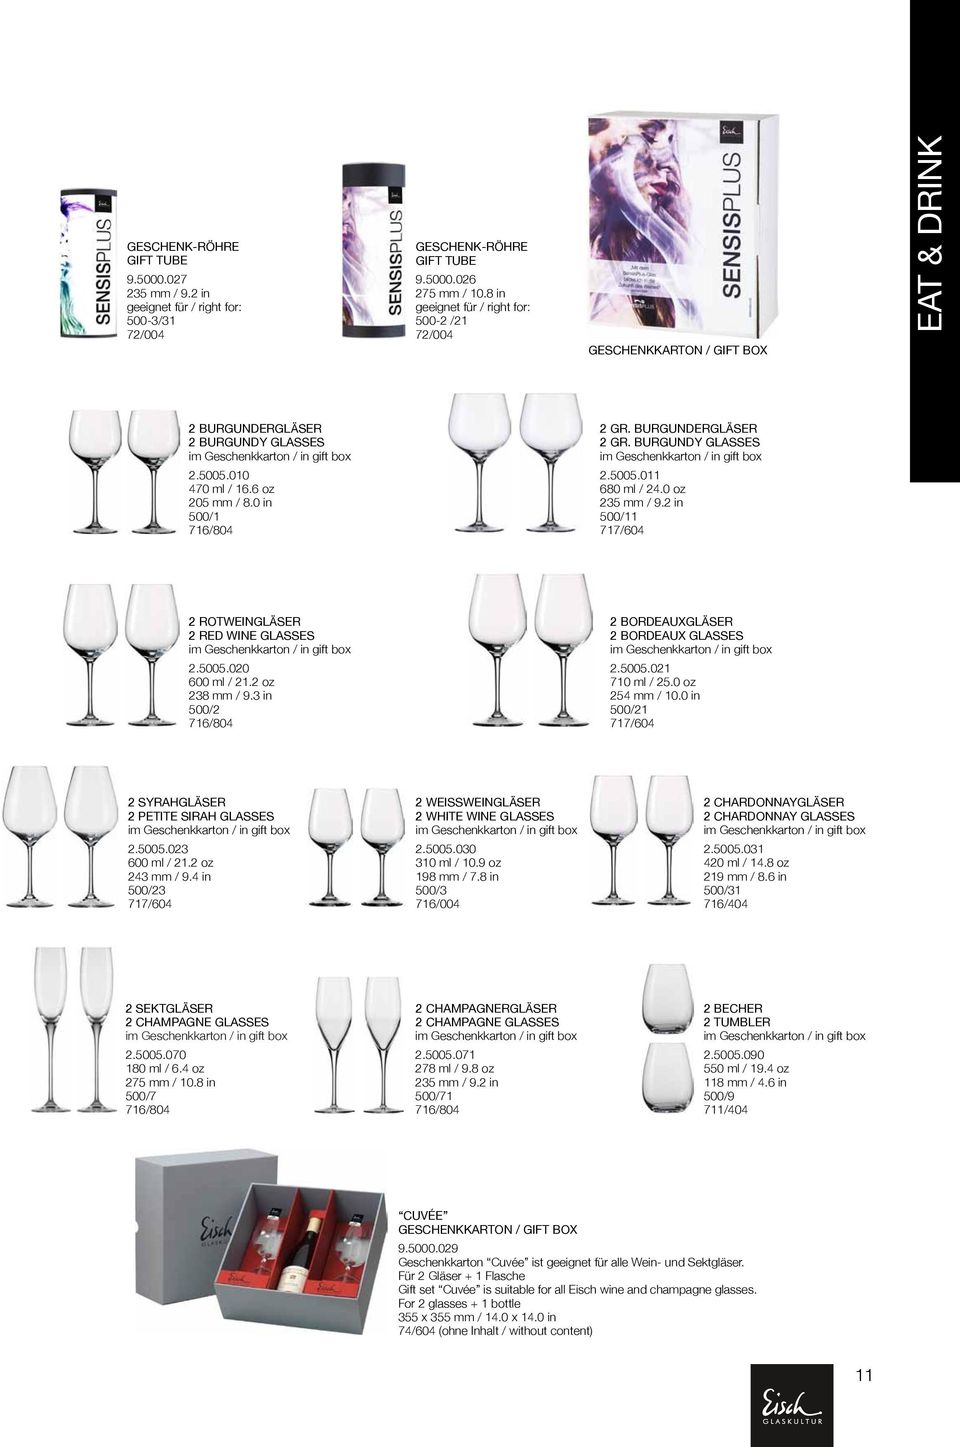 BurgunderGläser 2 gr. burgundy Glasses 2.5005.011 680 ml / 24.0 oz 235 mm / 9.2 in 500/11 717/604 2 RotweinGläser 2 red wine Glasses 2.5005.020 600 ml / 21.2 oz 238 mm / 9.